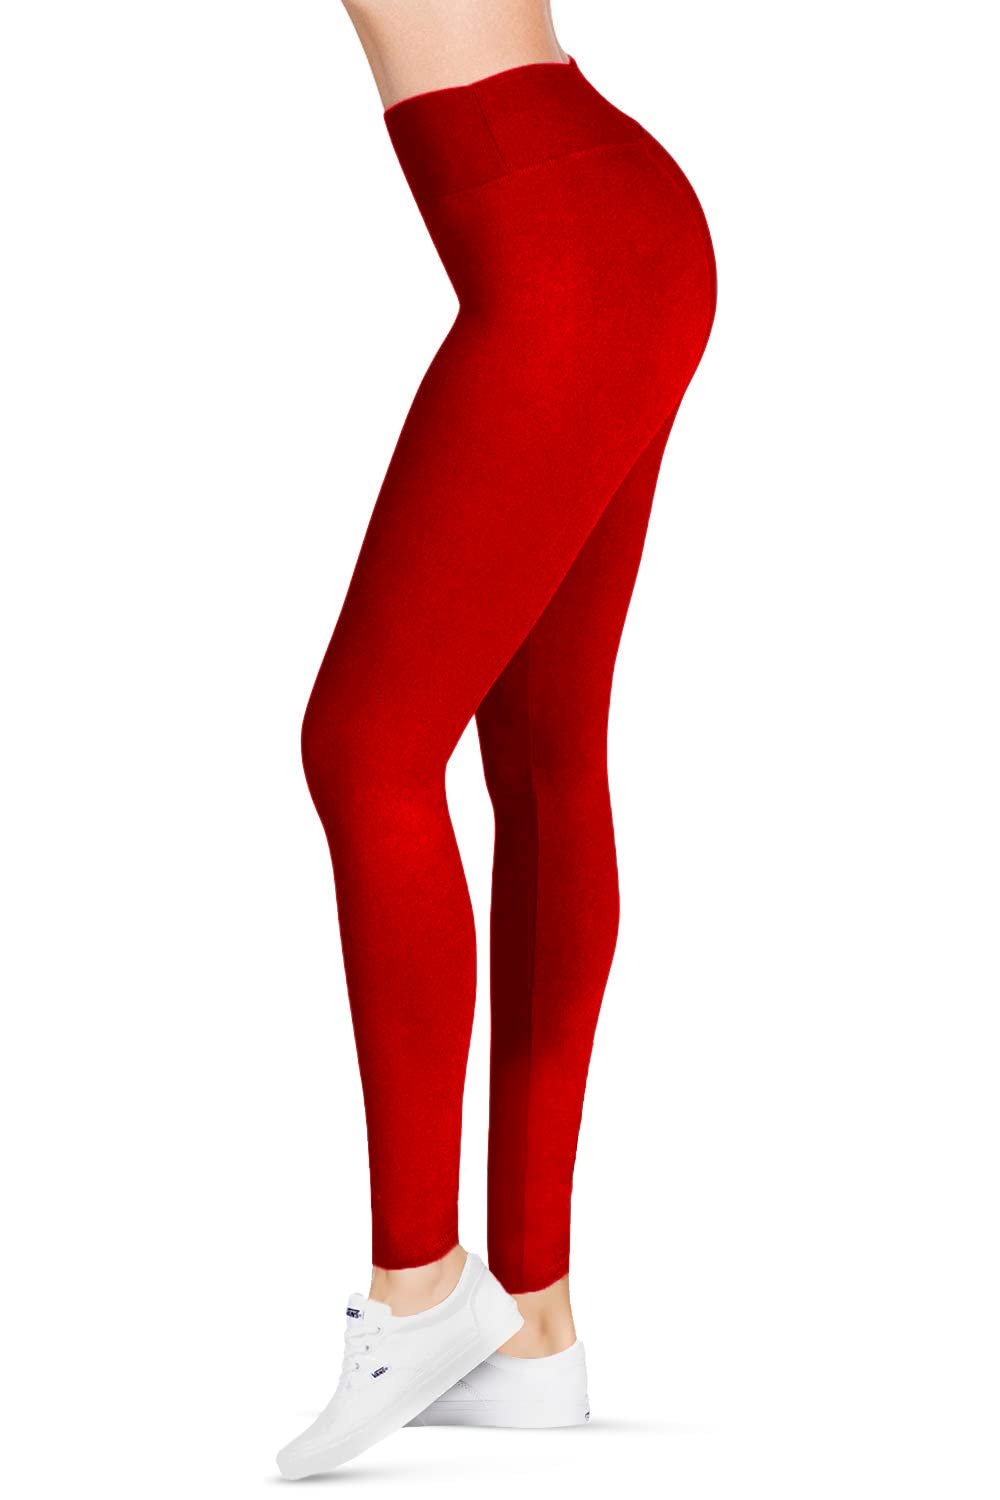 Red SATINA High Waisted Leggings for Women - One Size Yoga Leggings